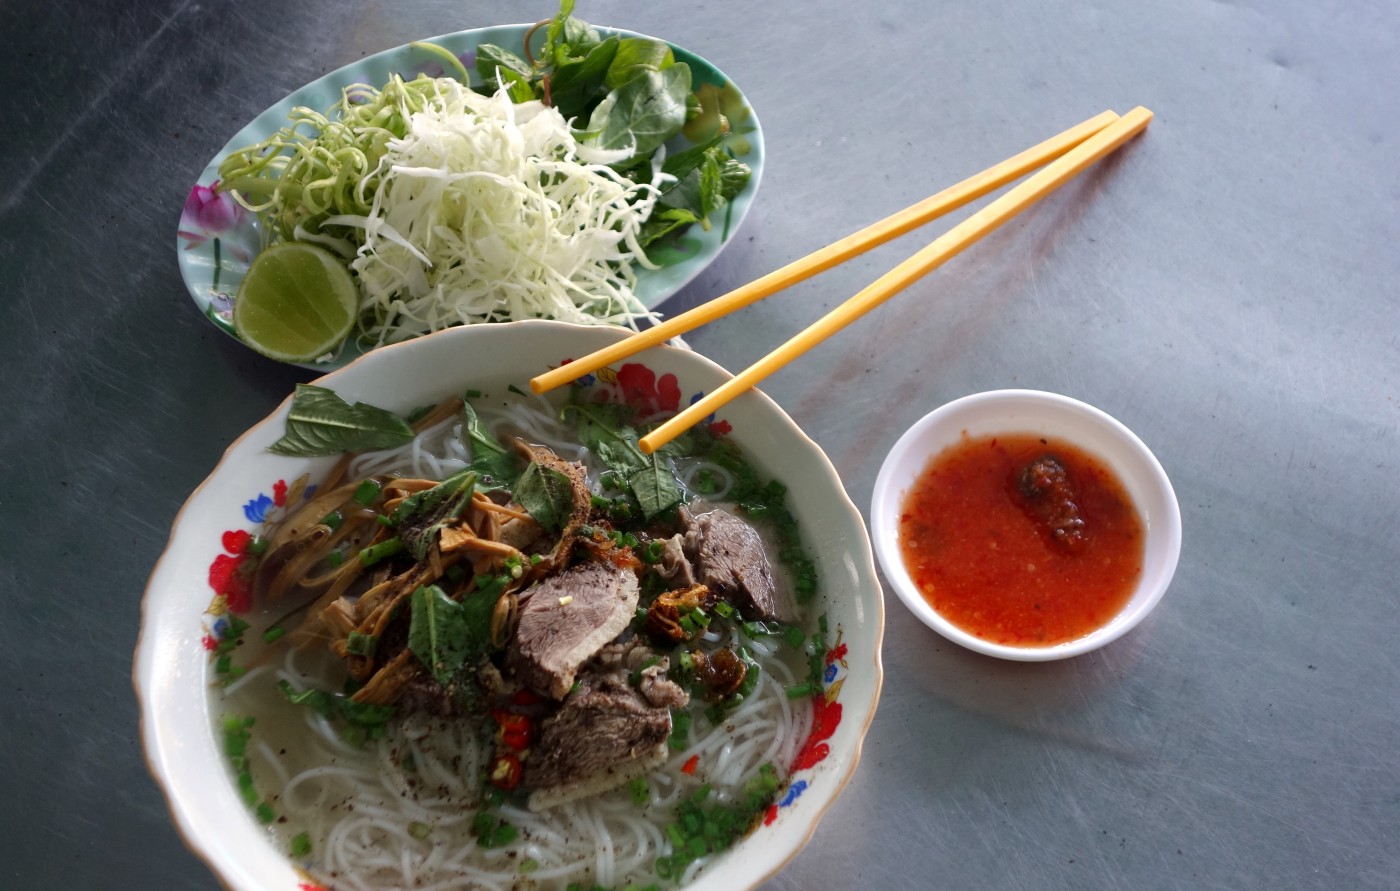 Bung mang vit - vietnamská kachní nudlová polévka z pouliční restaurace